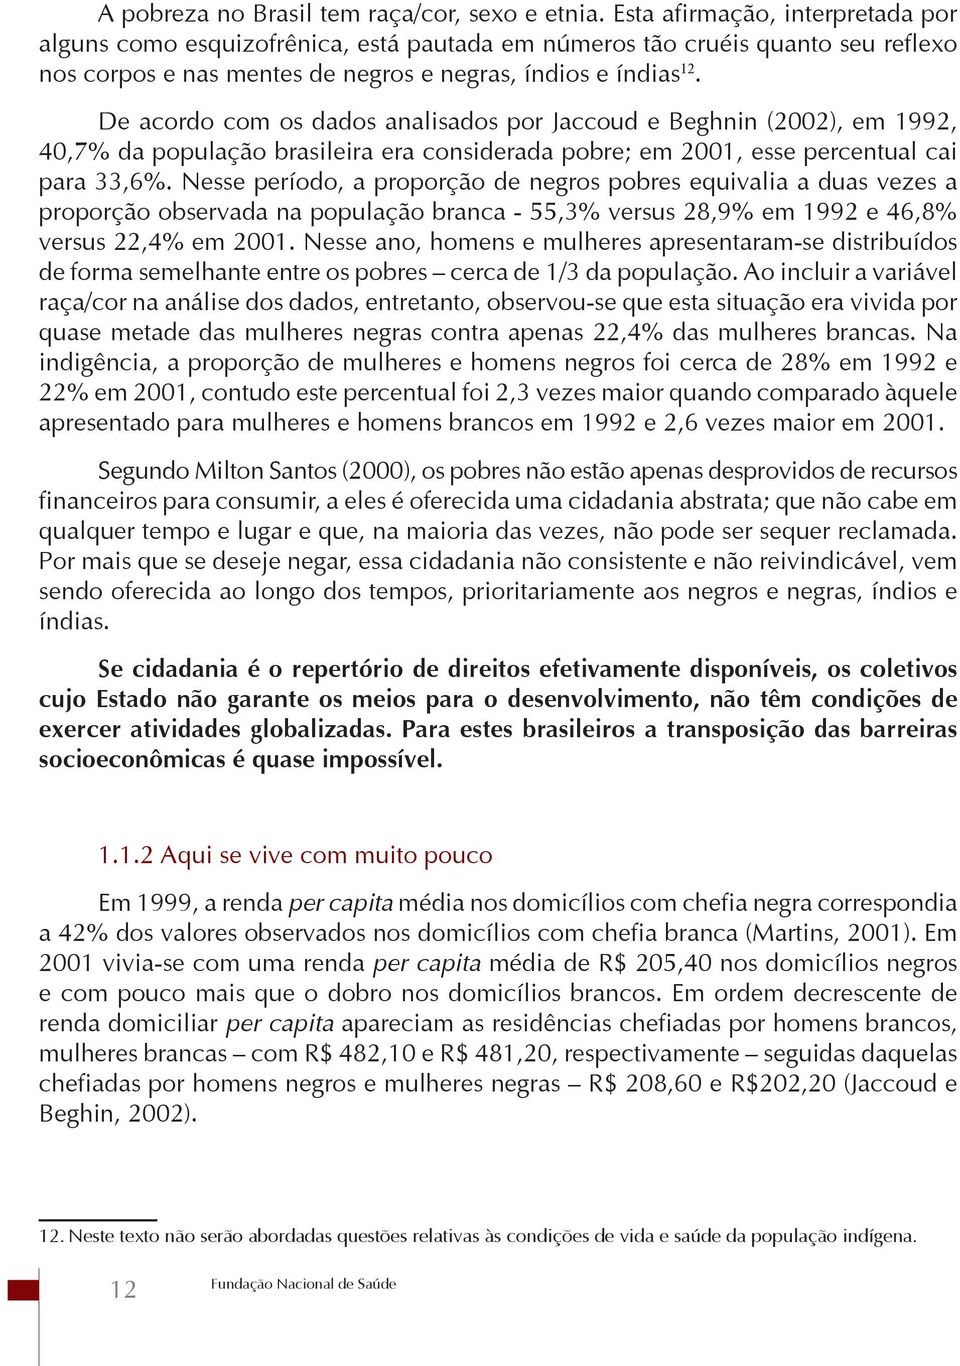 De acordo com os dados analisados por Jaccoud e Beghnin (2002), em 1992, 40,7% da população brasileira era considerada pobre; em 2001, esse percentual cai para 33,6%.